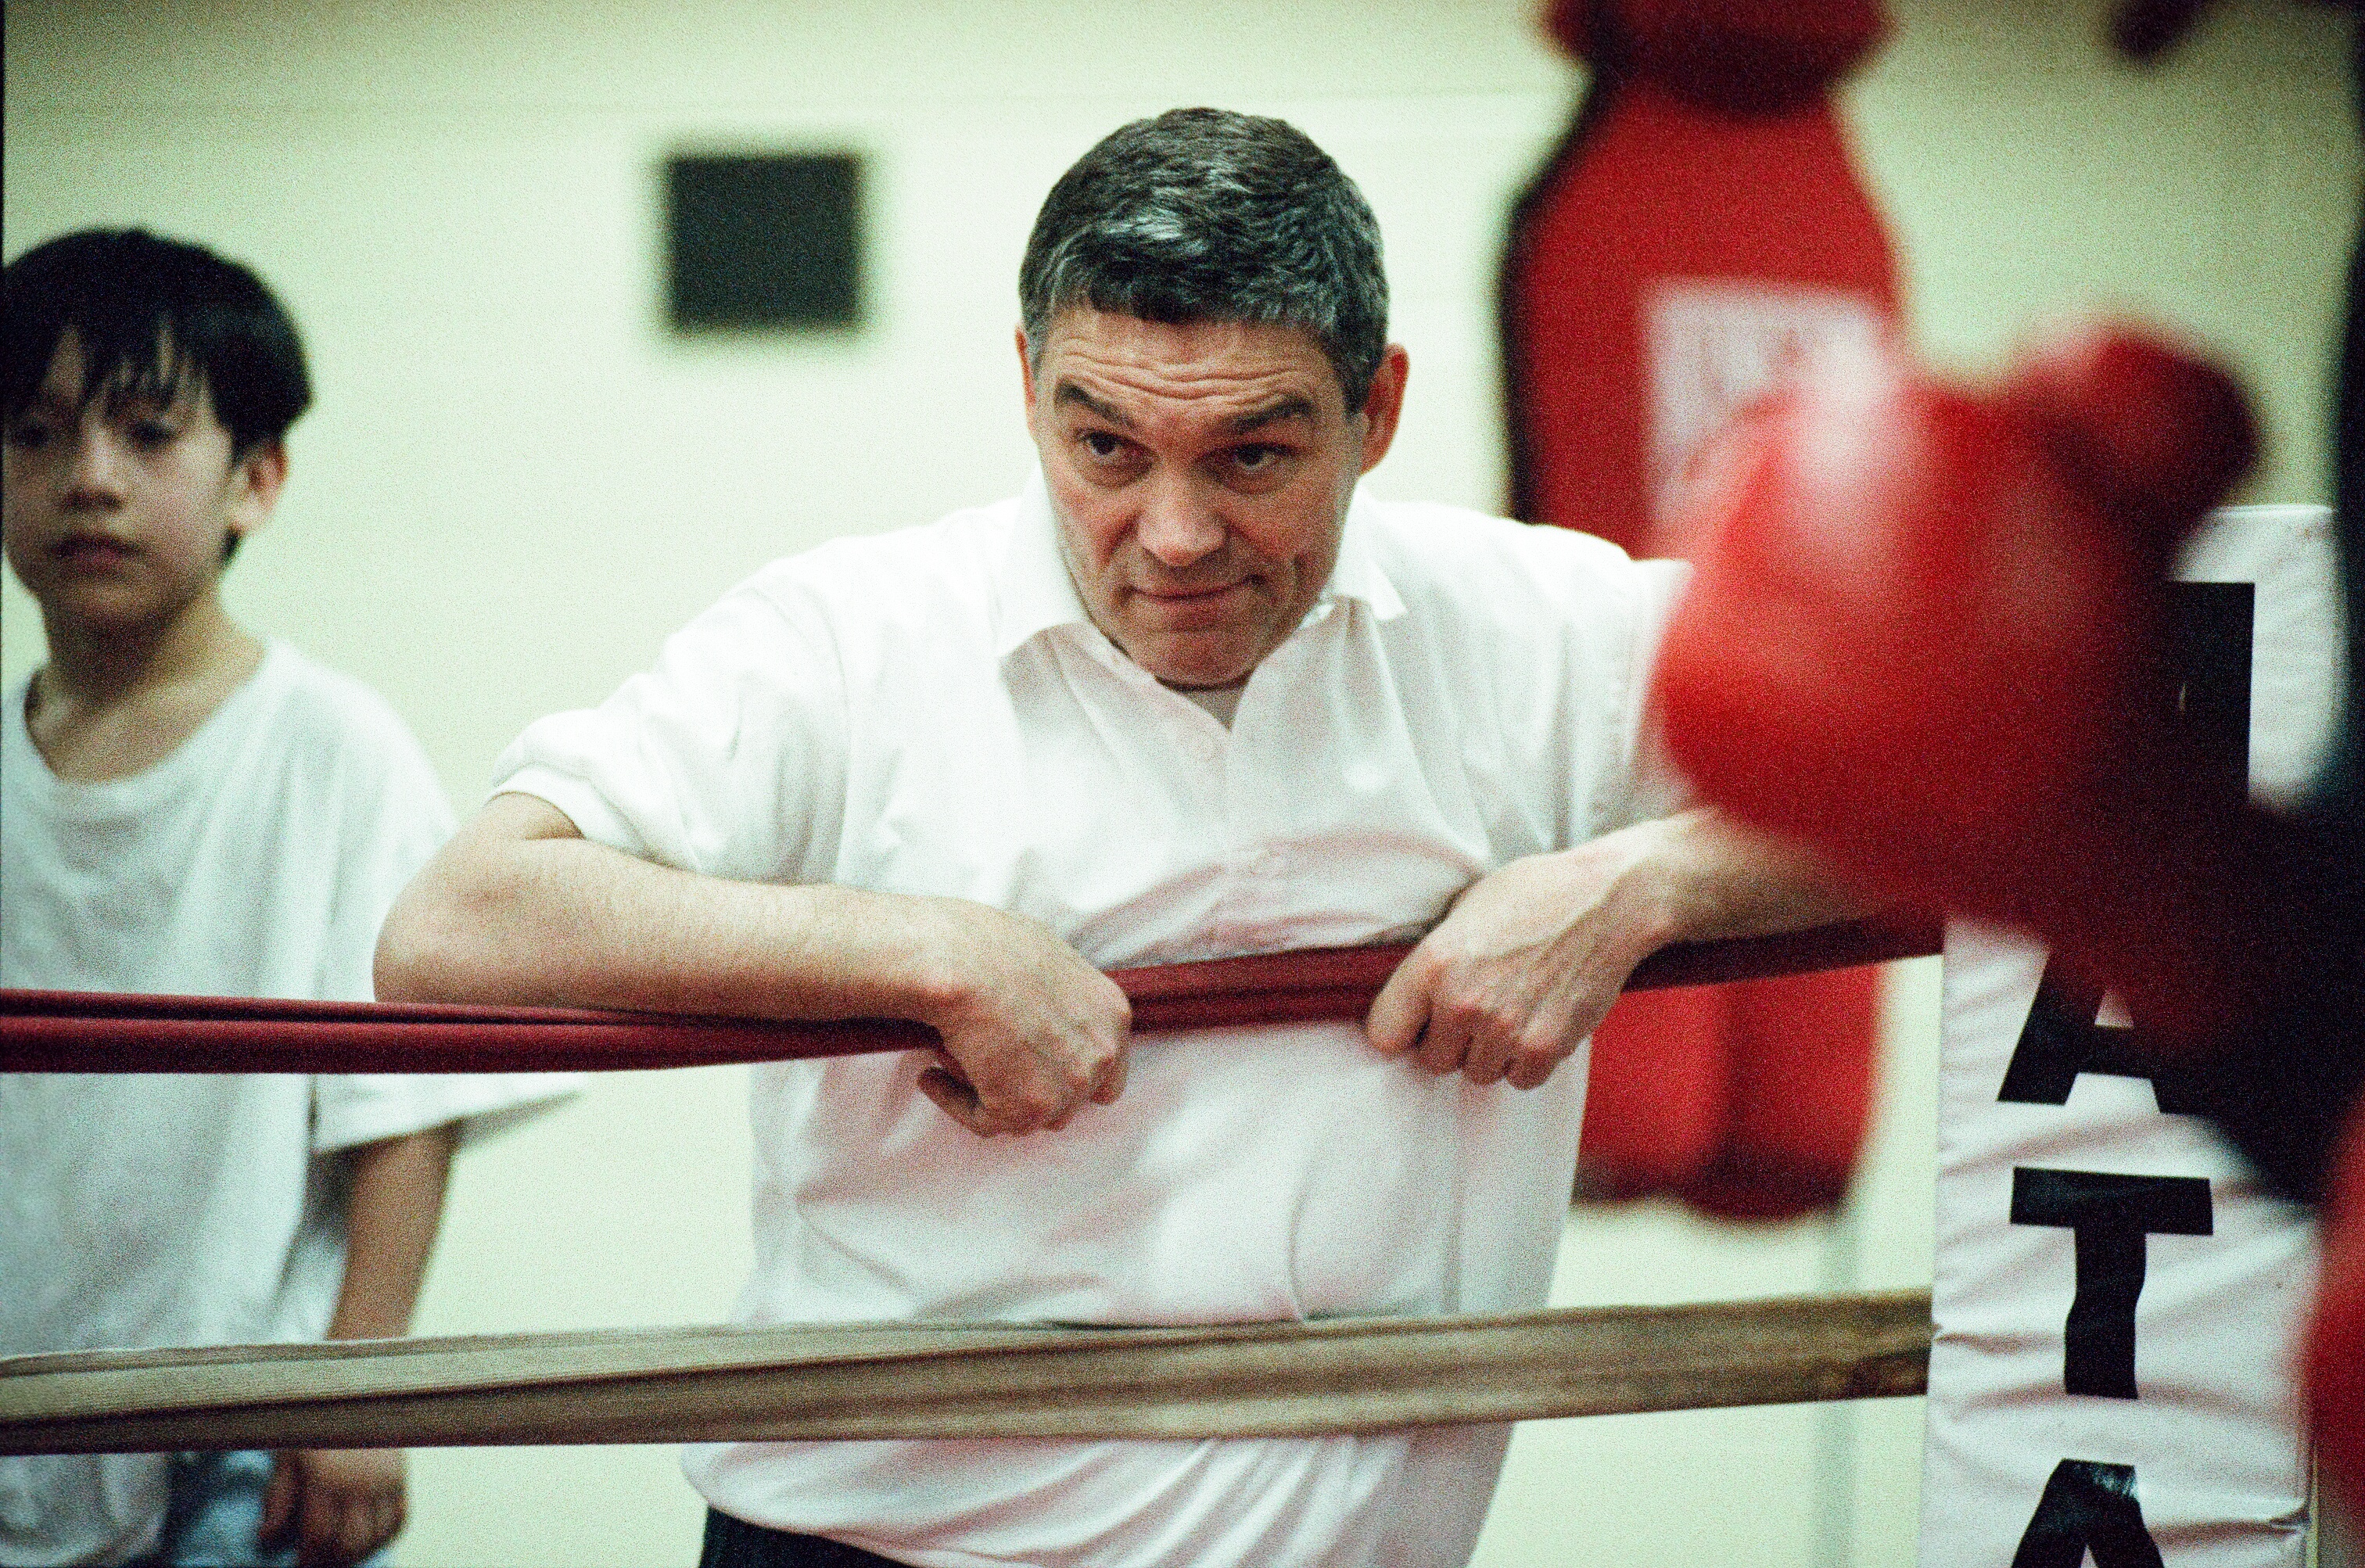 Amateur boxing coach Tom O’Shea.